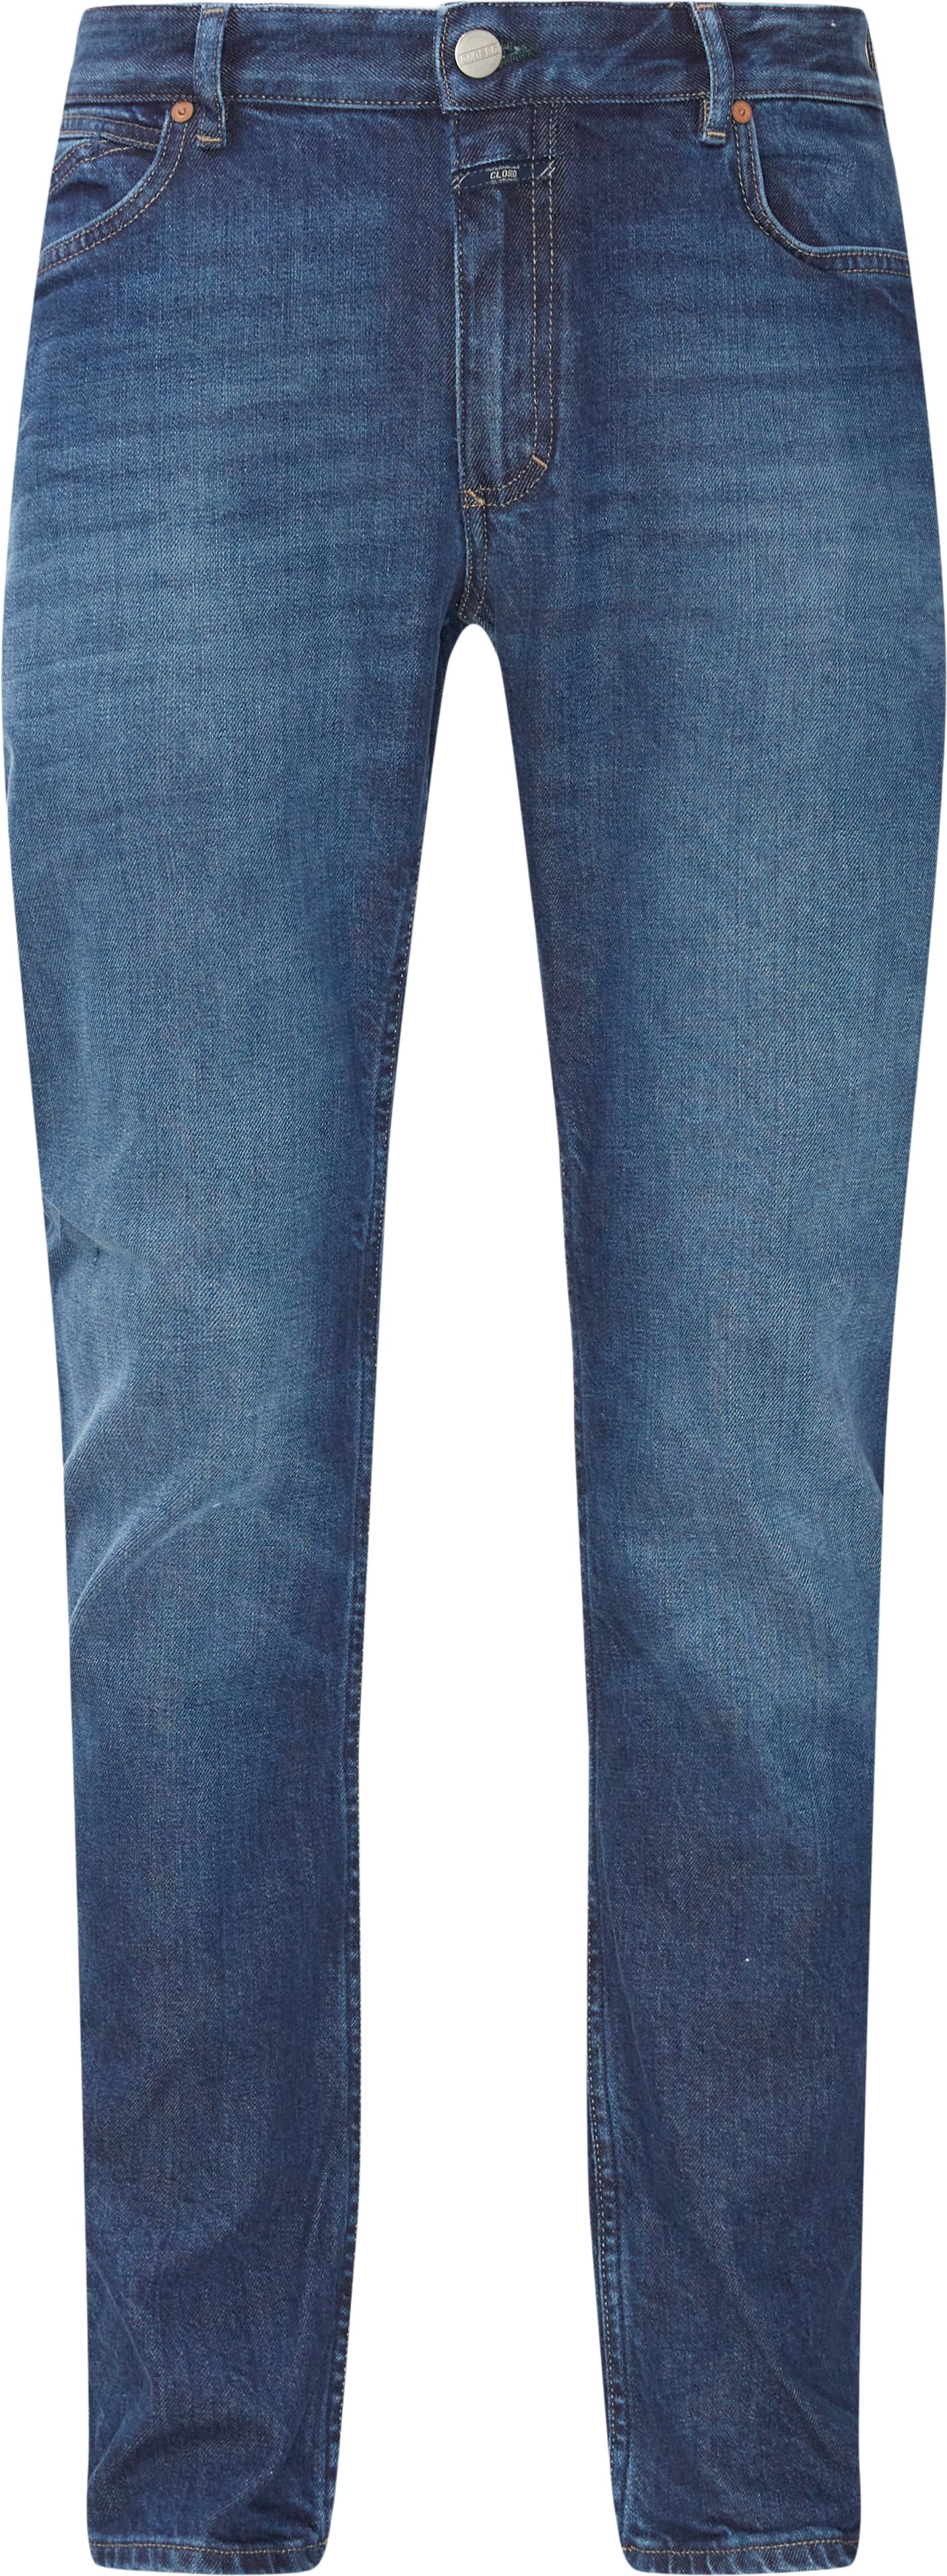 C32102-0EA-8A Jeans - Jeans - Regular fit - Blå